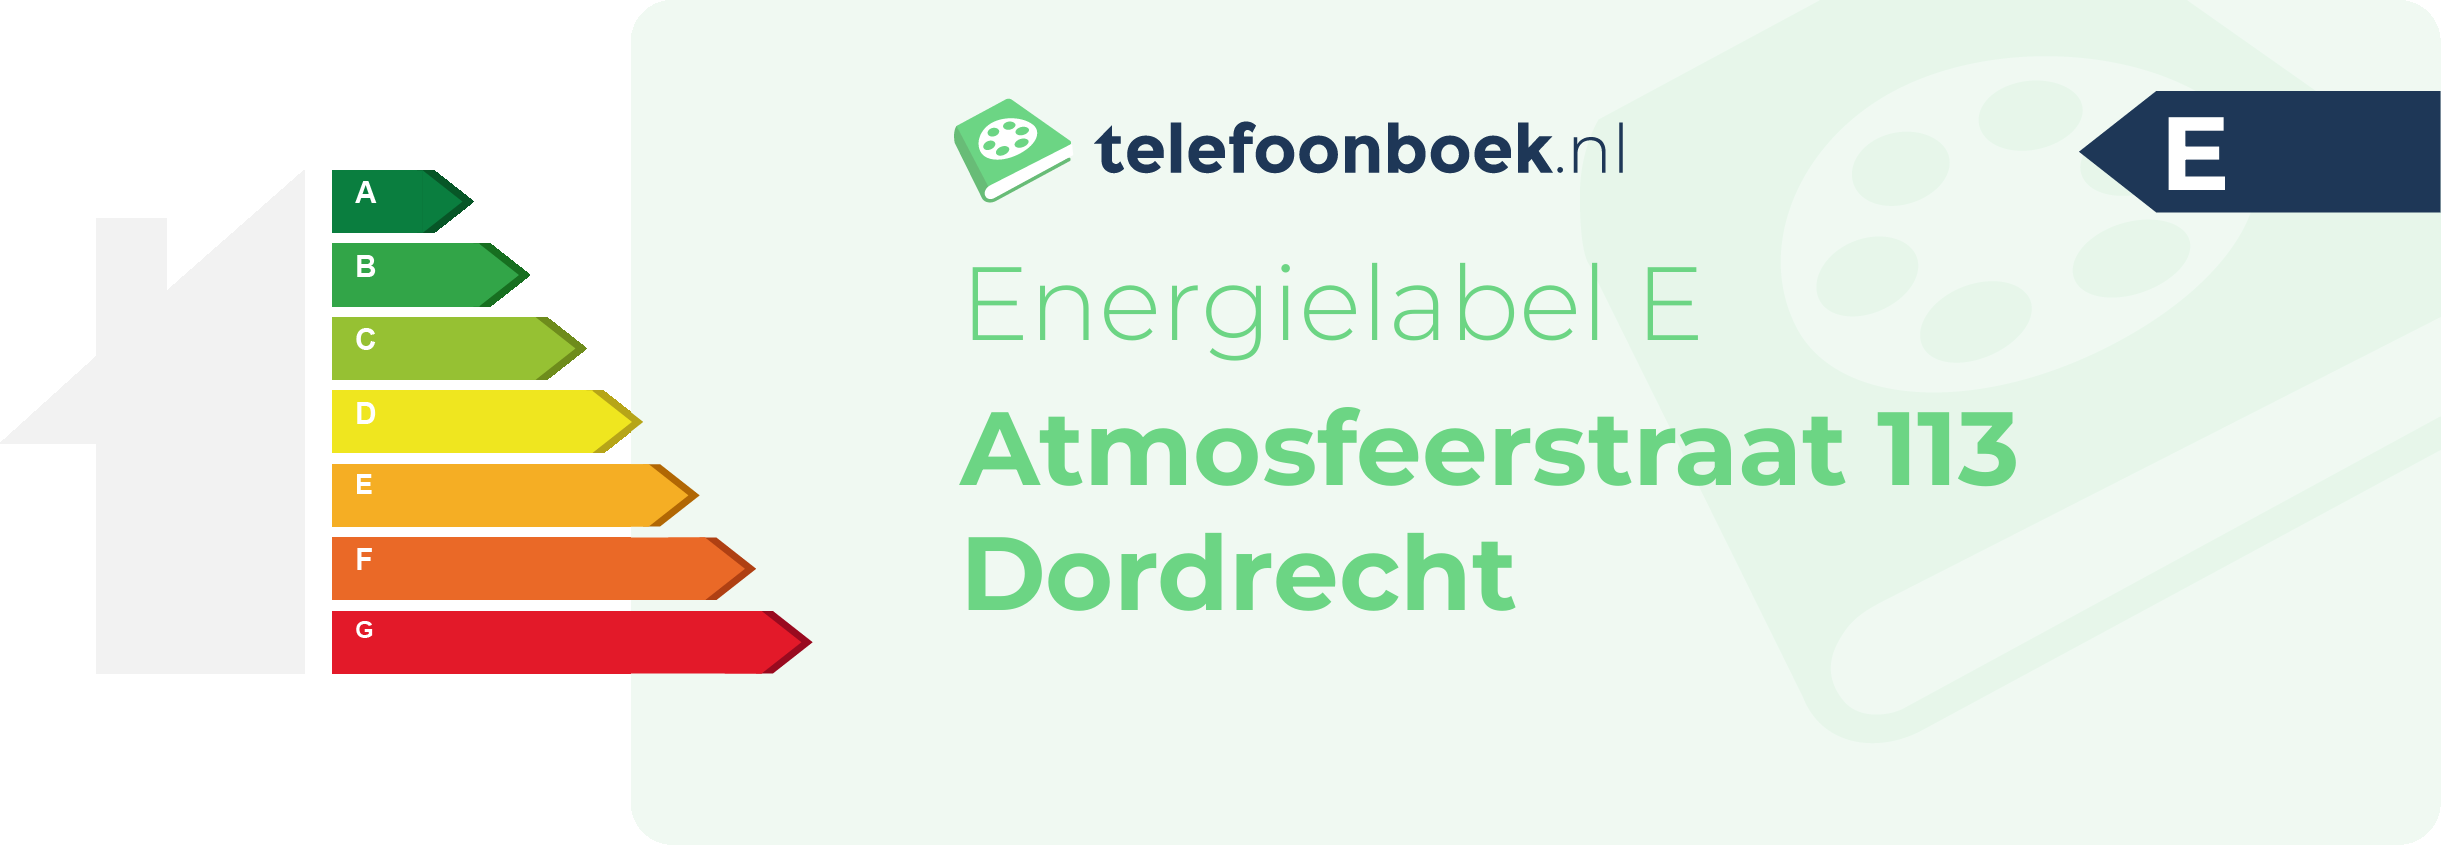 Energielabel Atmosfeerstraat 113 Dordrecht